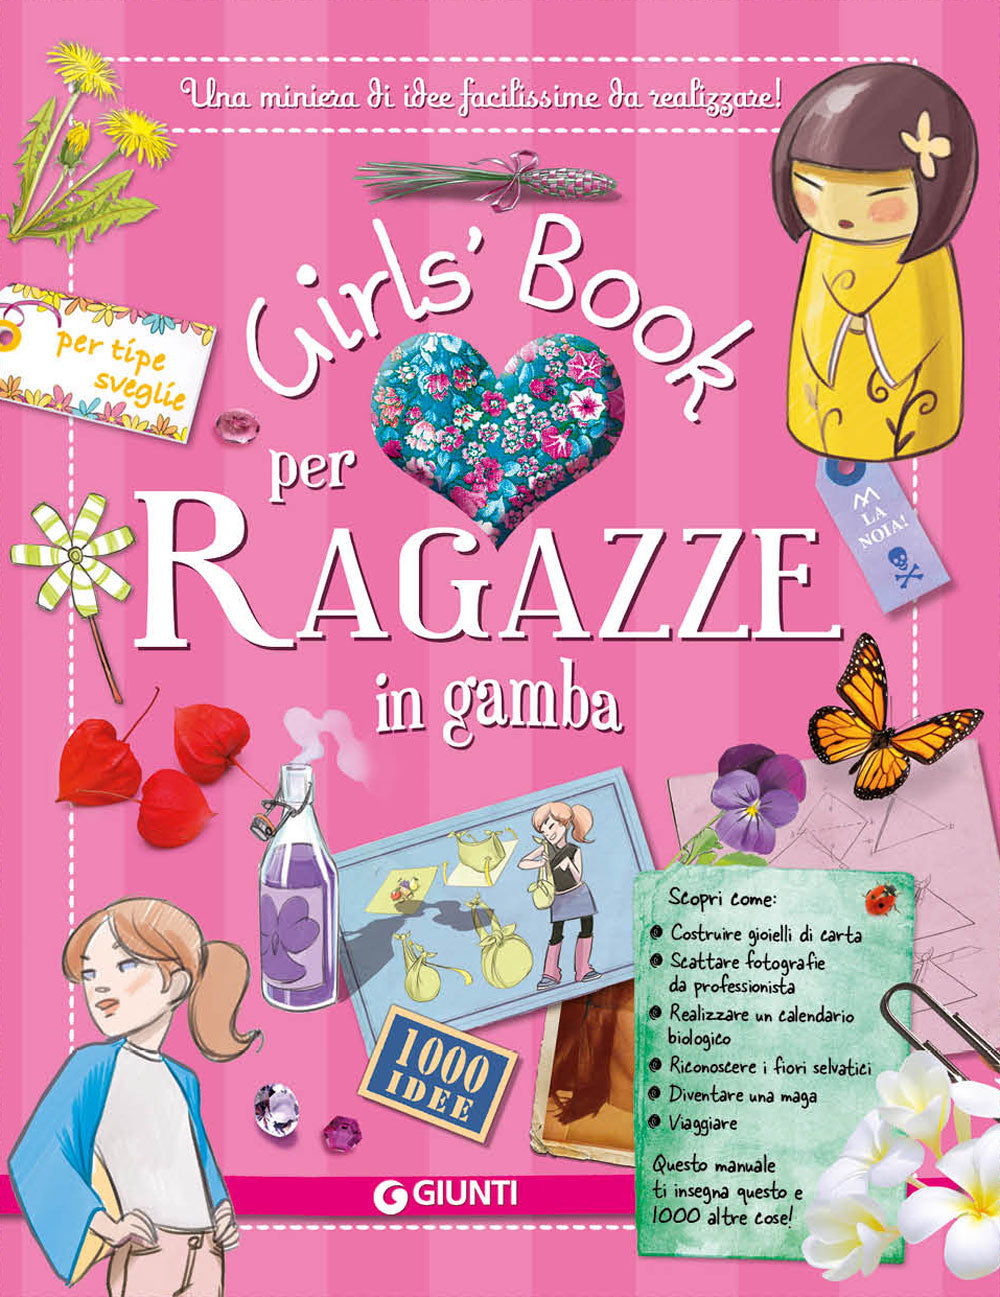 Girls' Book per Ragazze in gamba::Una miniera di idee facilissime da realizzare! 1000 idee per tipe sveglie